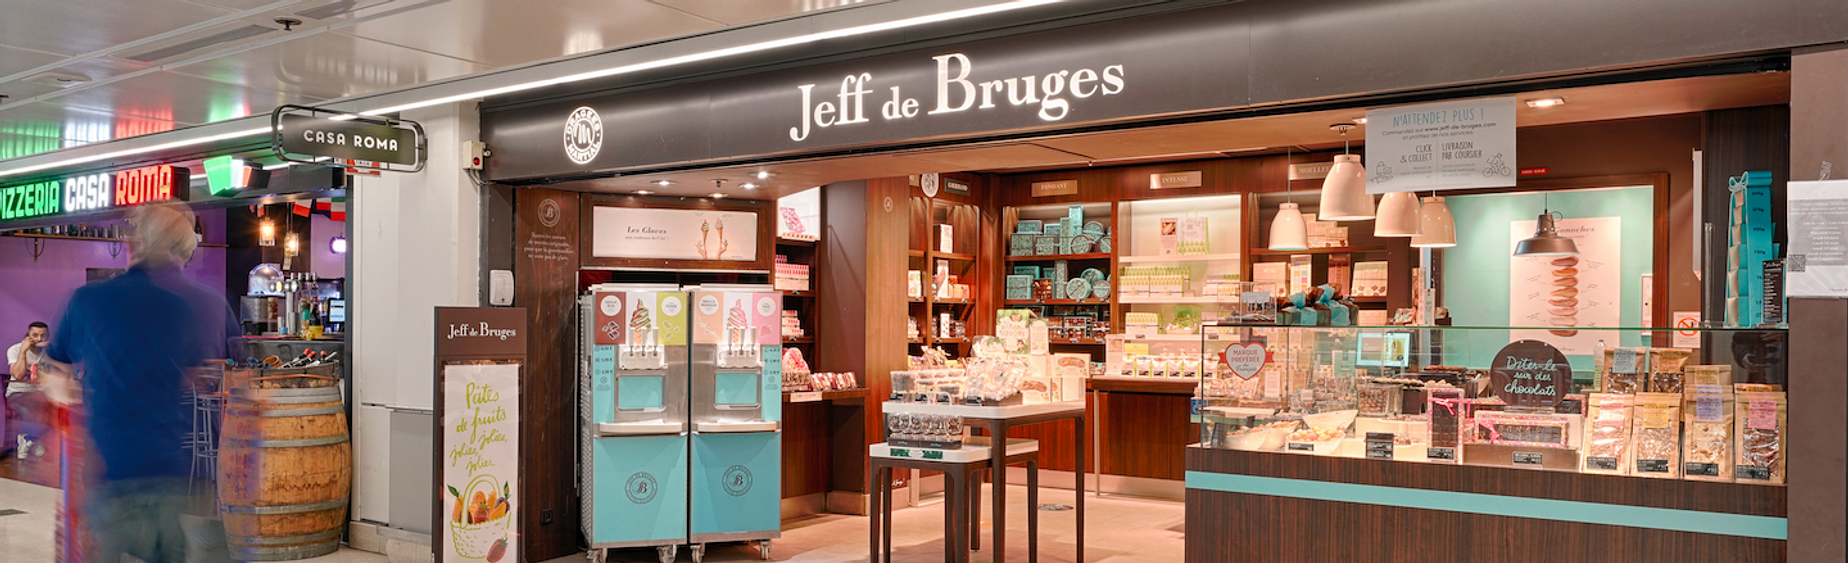 Jeff de Bruges chocolat centre commercial Bercy 2 charenton le pont